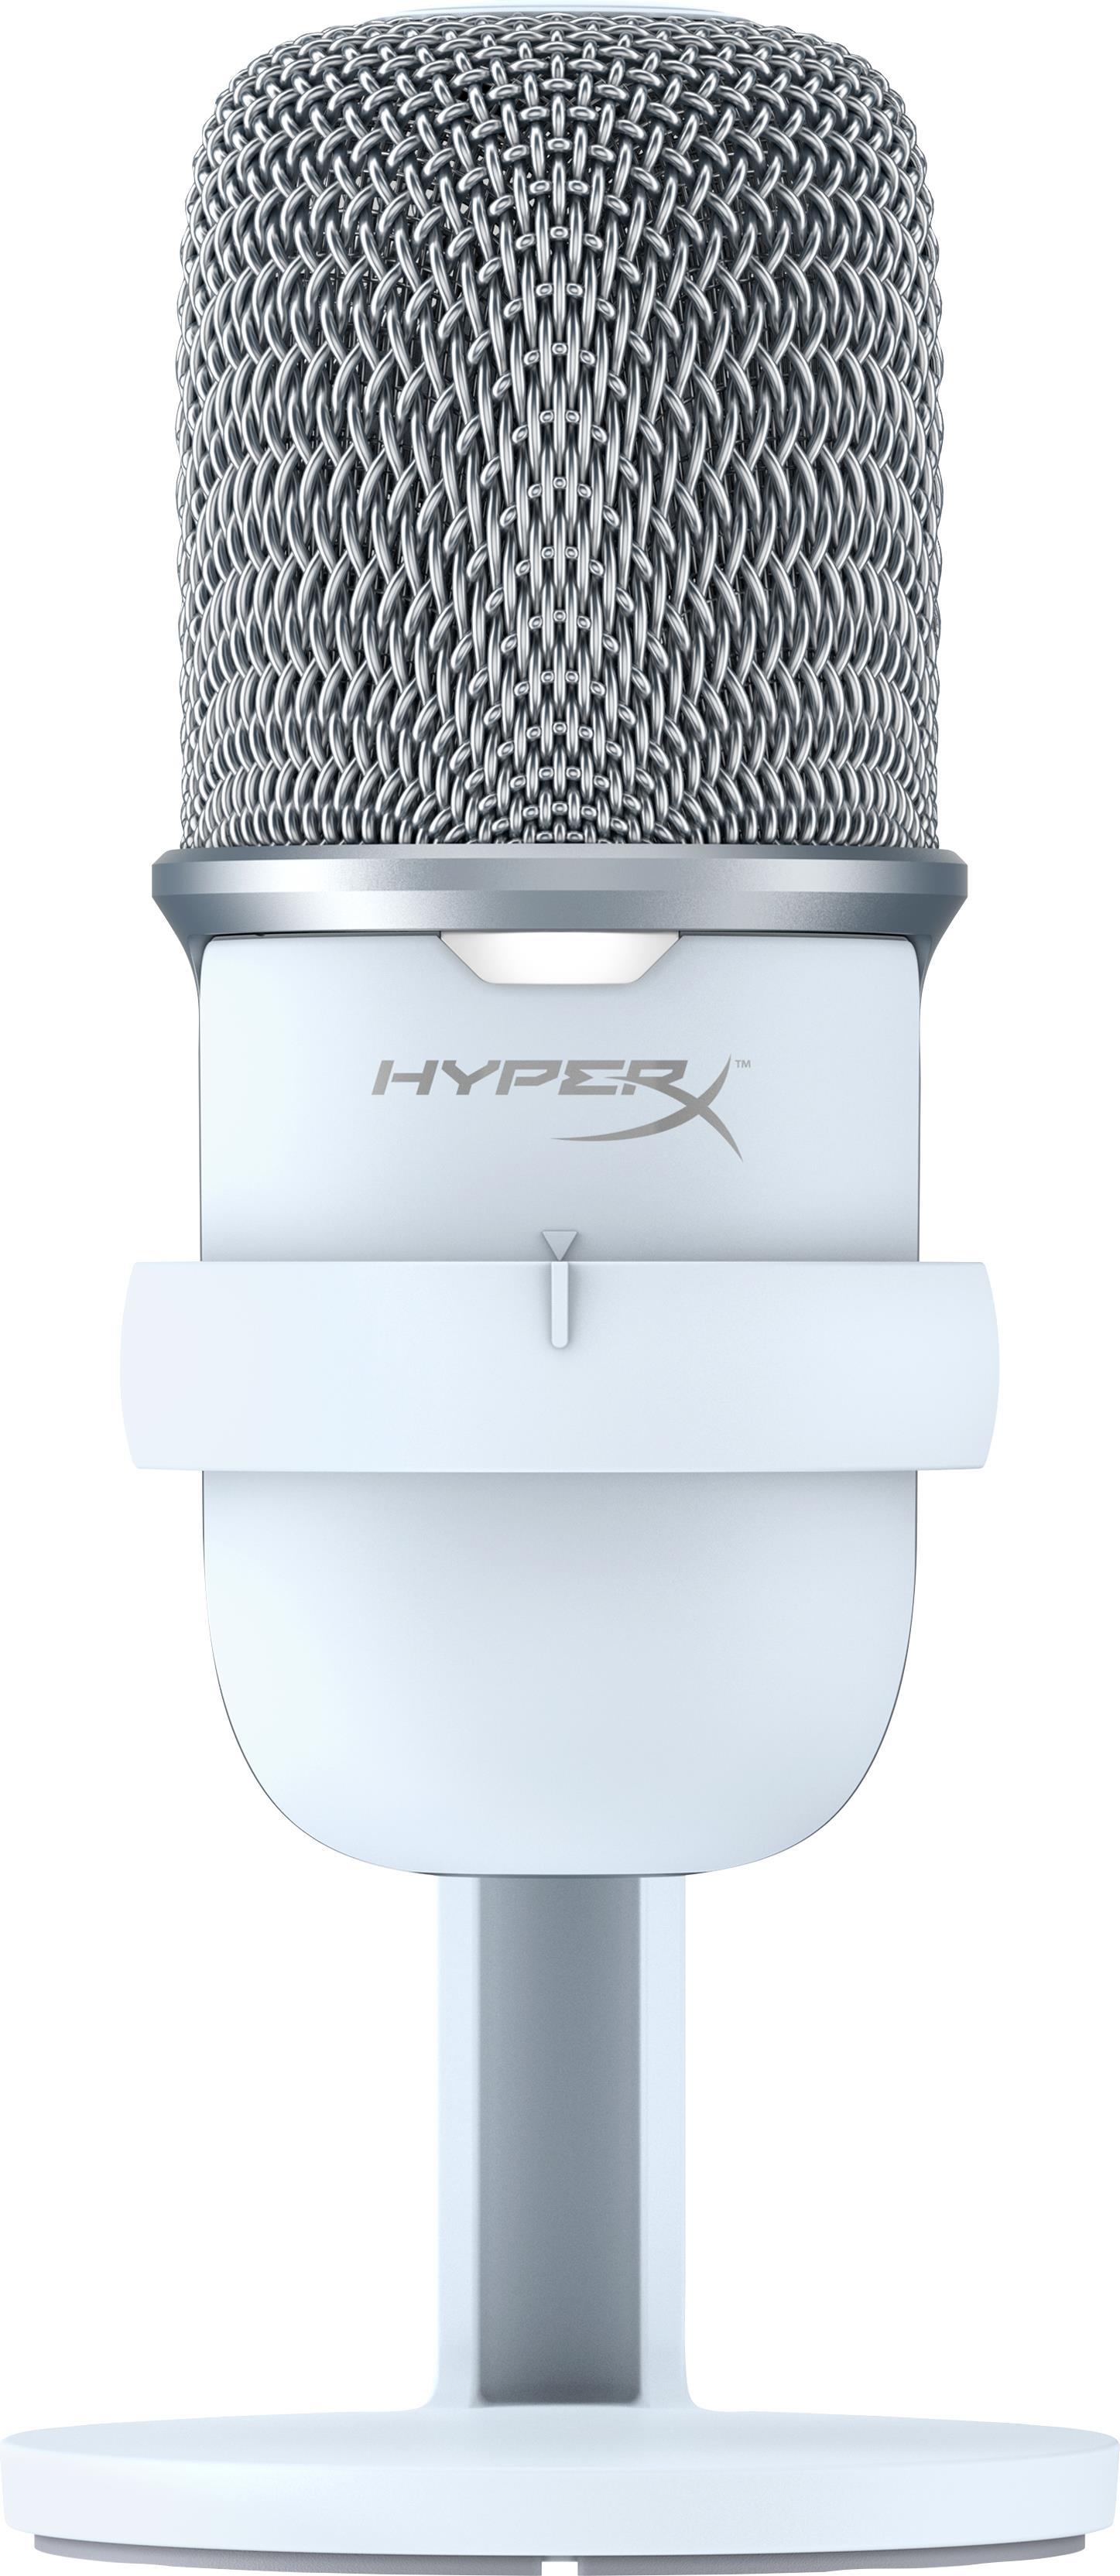 HyperX SoloCast - USB Microphone (White) Weiß Mikrofon für Spielkonsole (519T2AA)